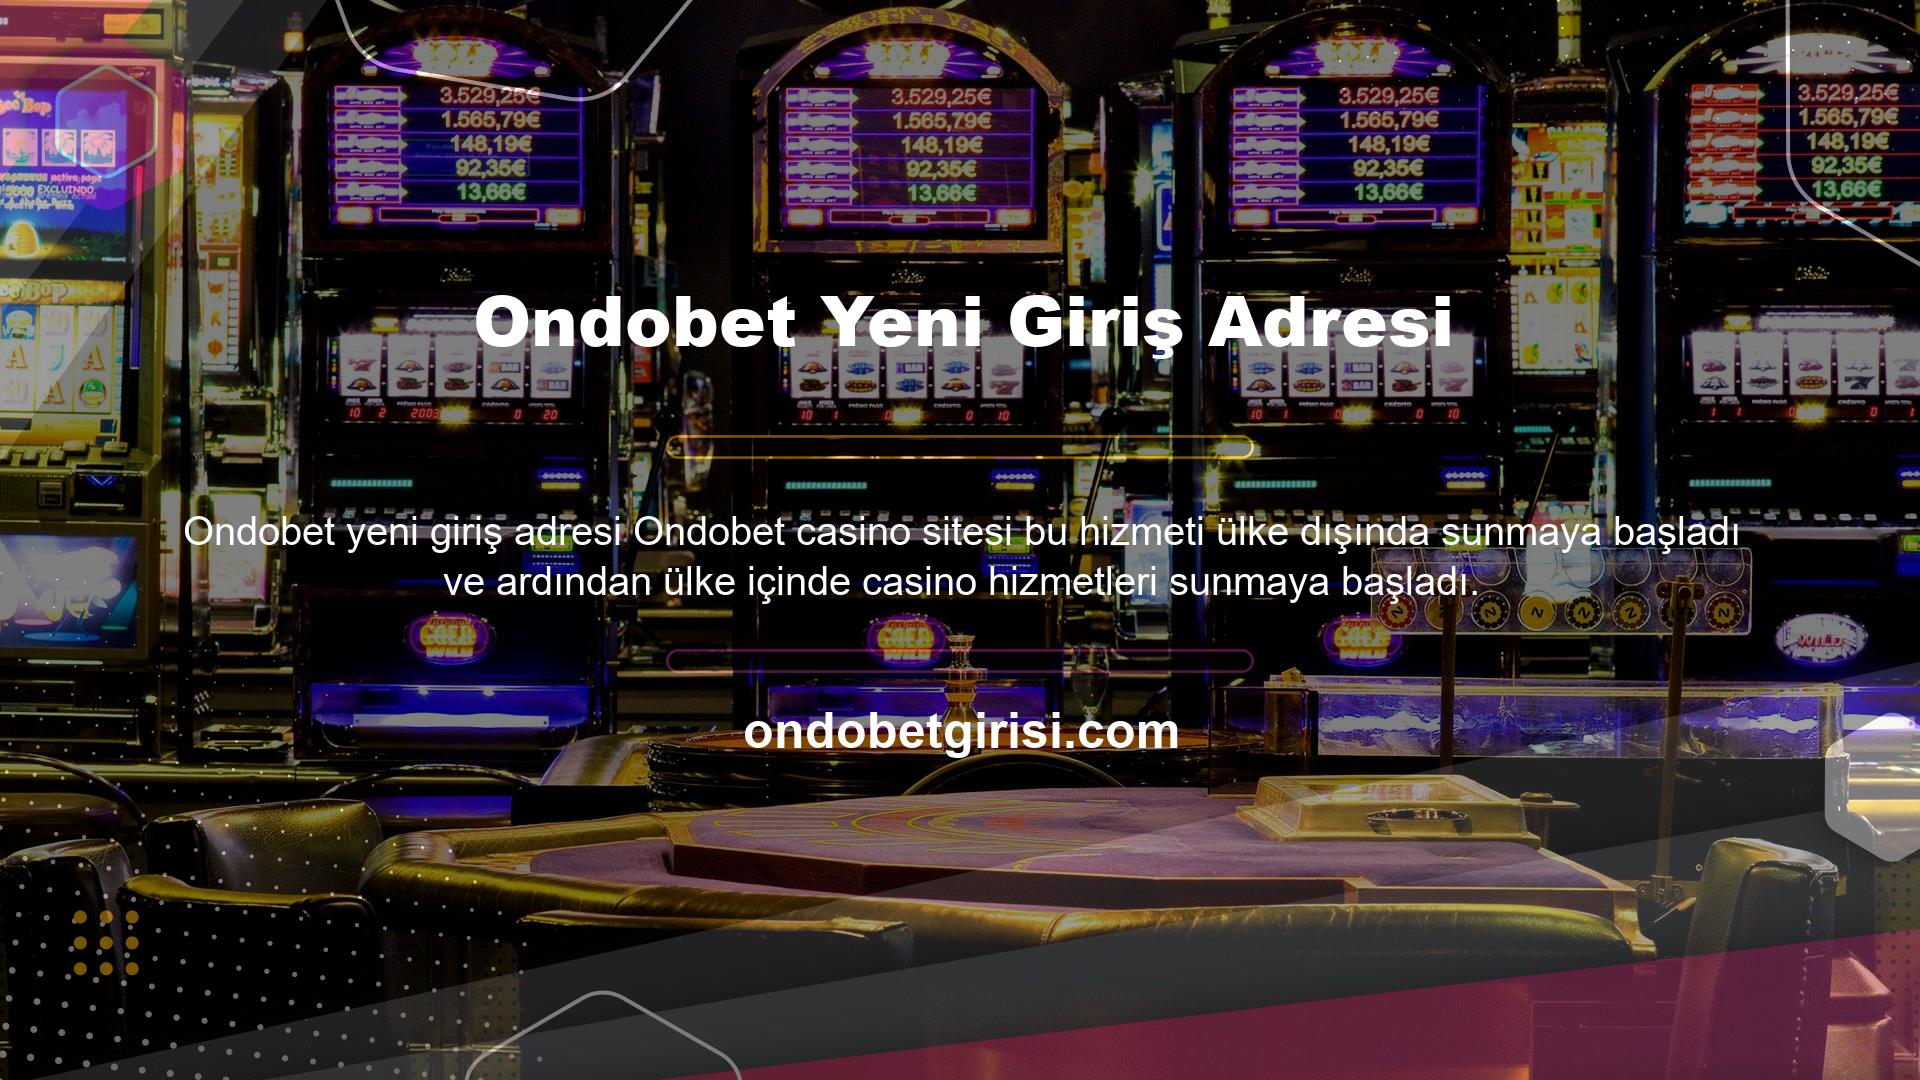 Ondobet yeni giriş adresi Bu site, spor bahisleri ve casinolar bahisleri için lisanslama hizmetleri sunmaktadır